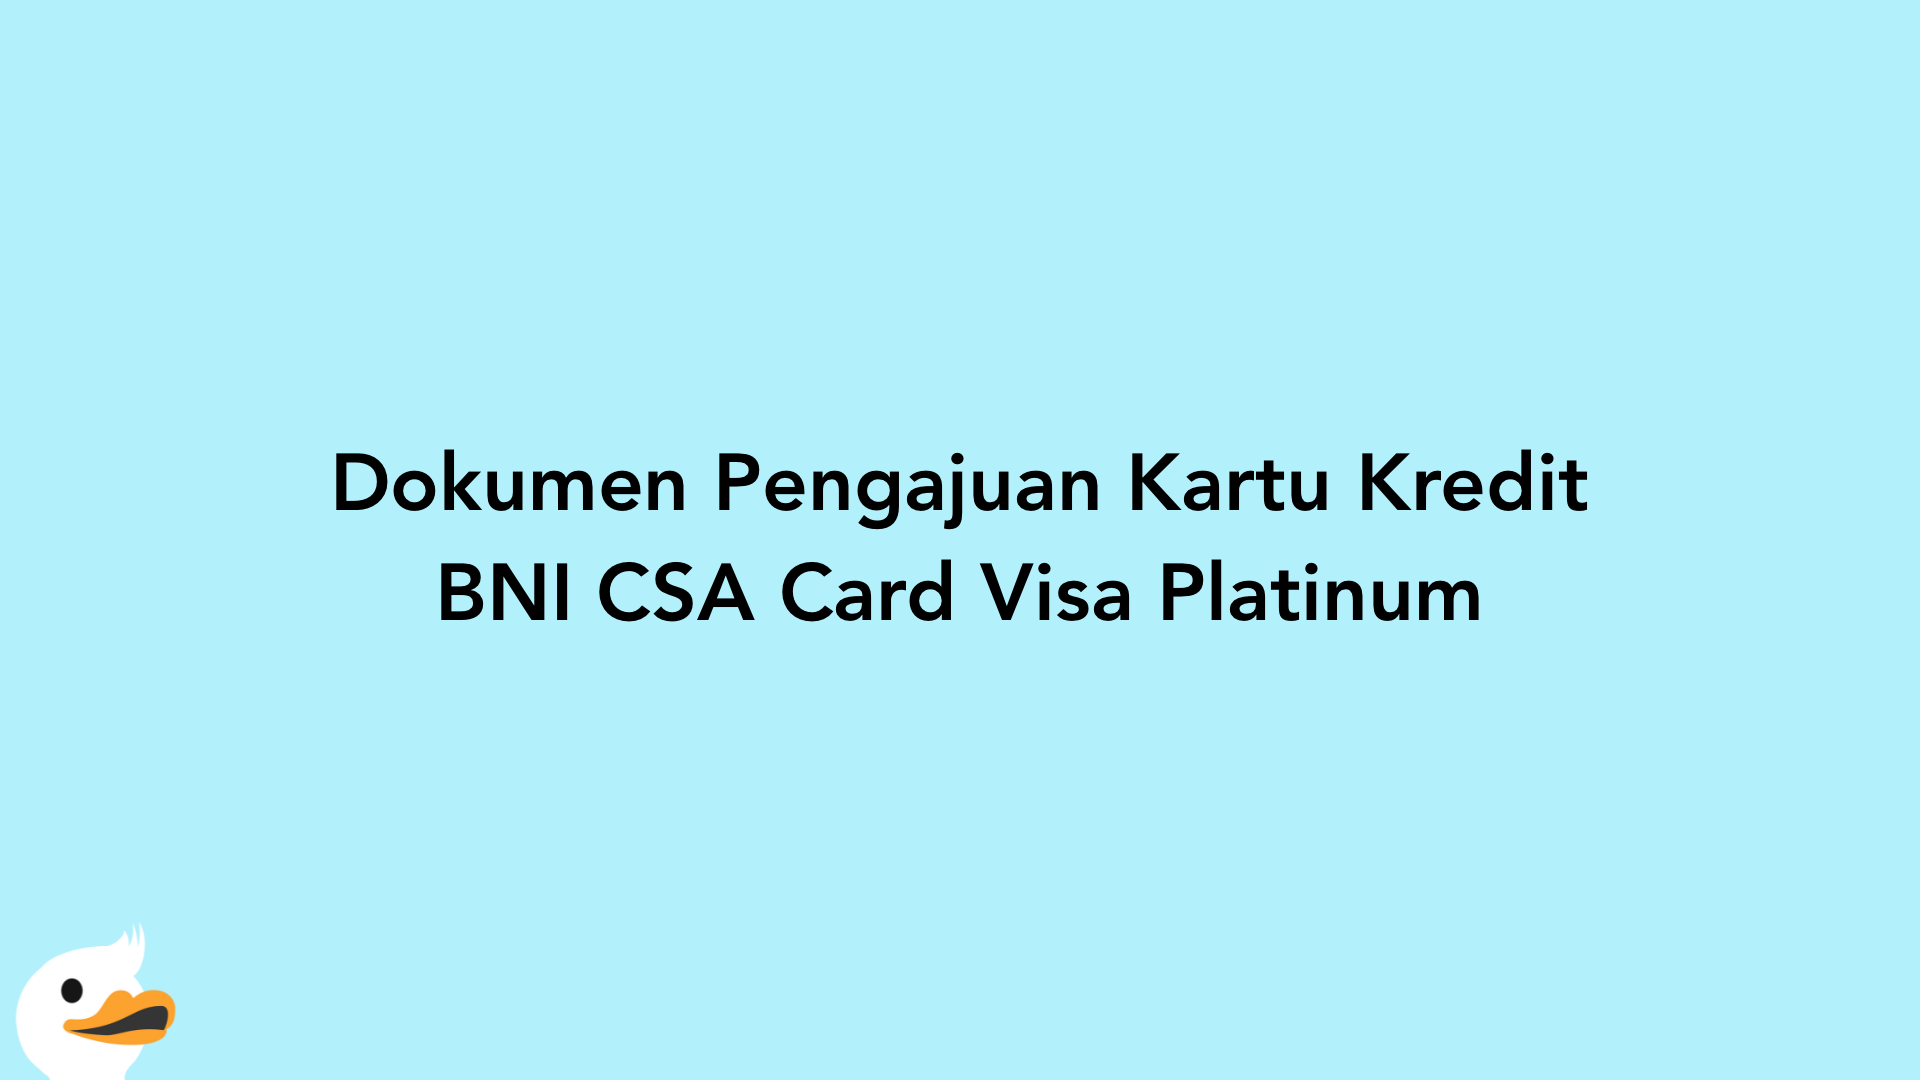 Dokumen Pengajuan Kartu Kredit BNI CSA Card Visa Platinum